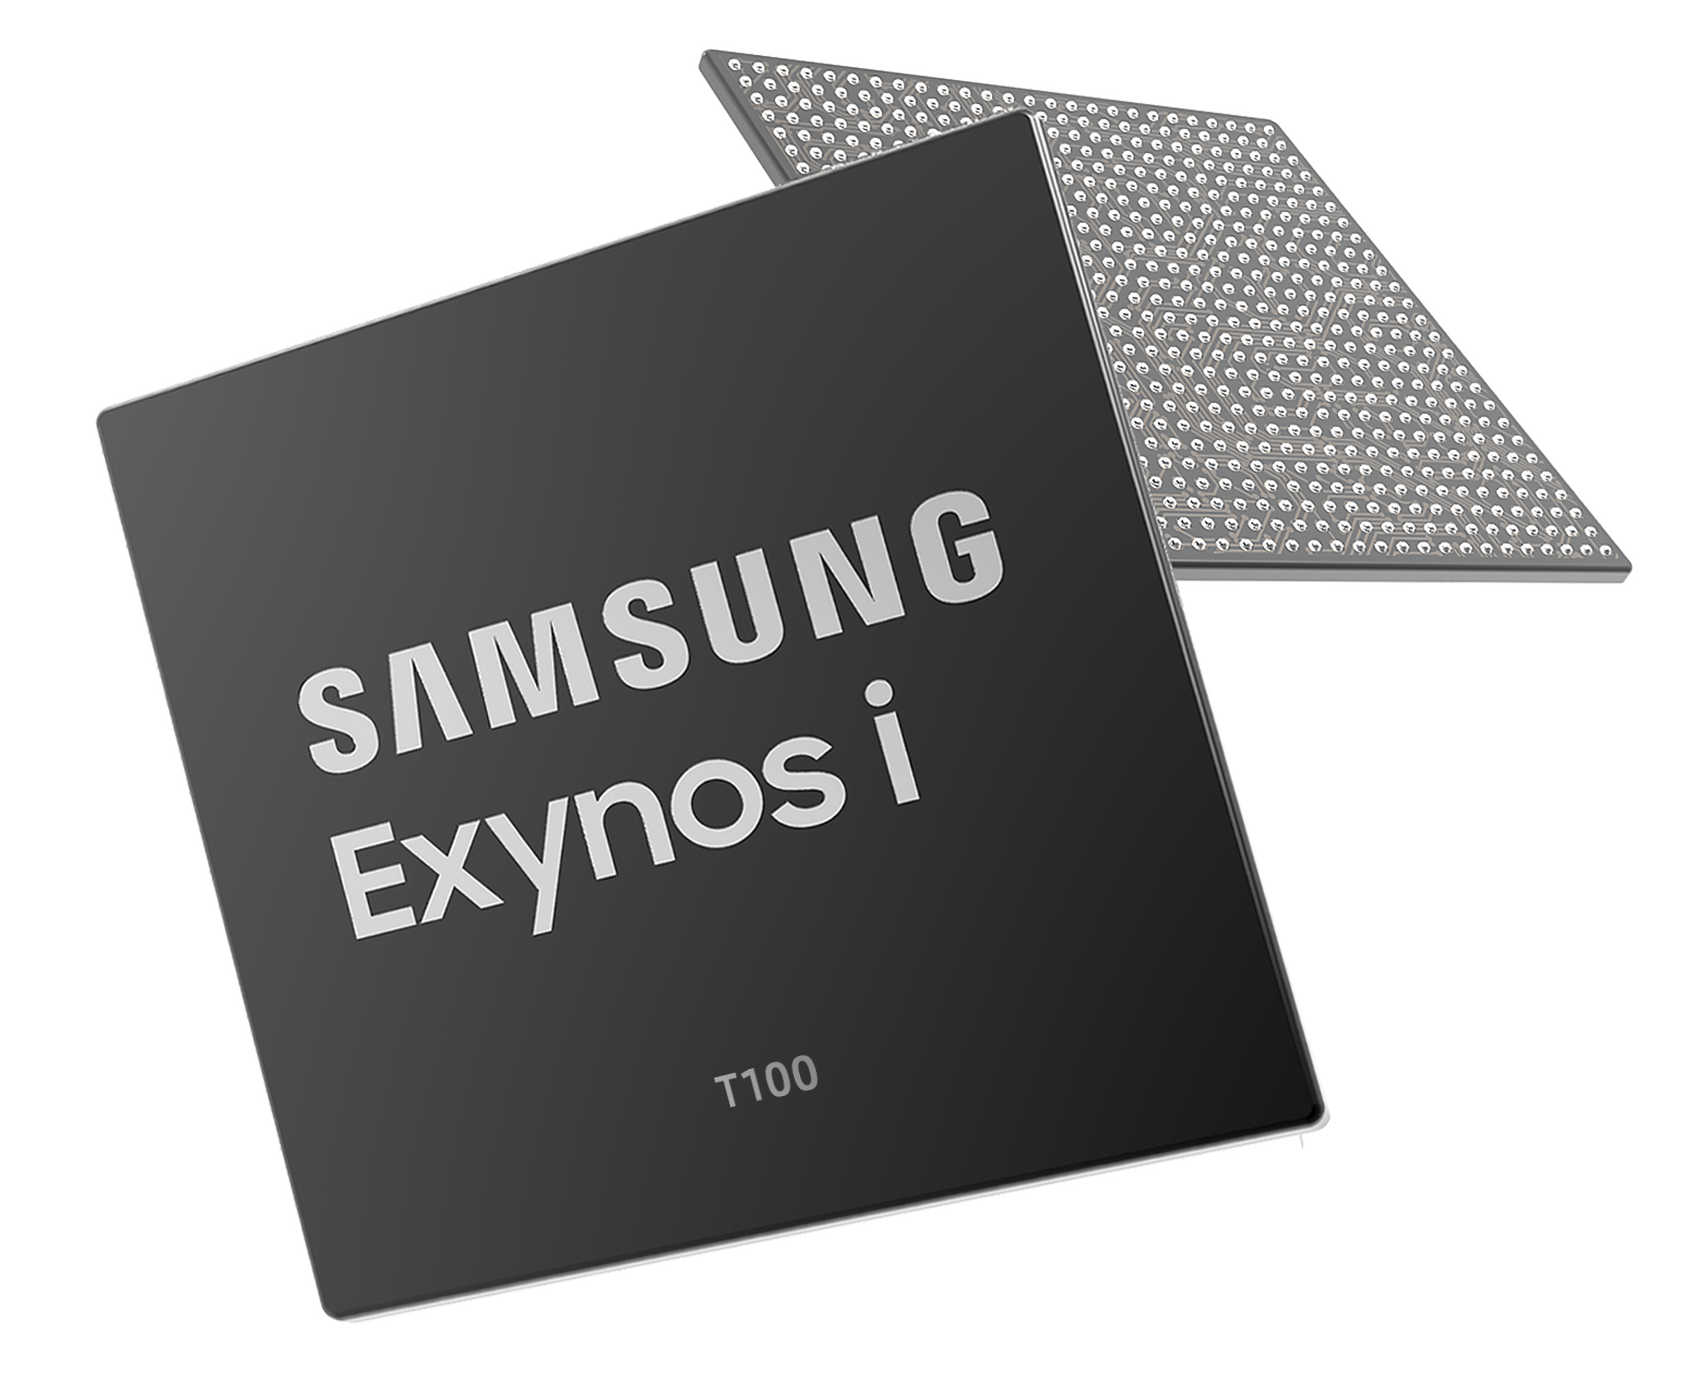 Samsung Exynos T 100